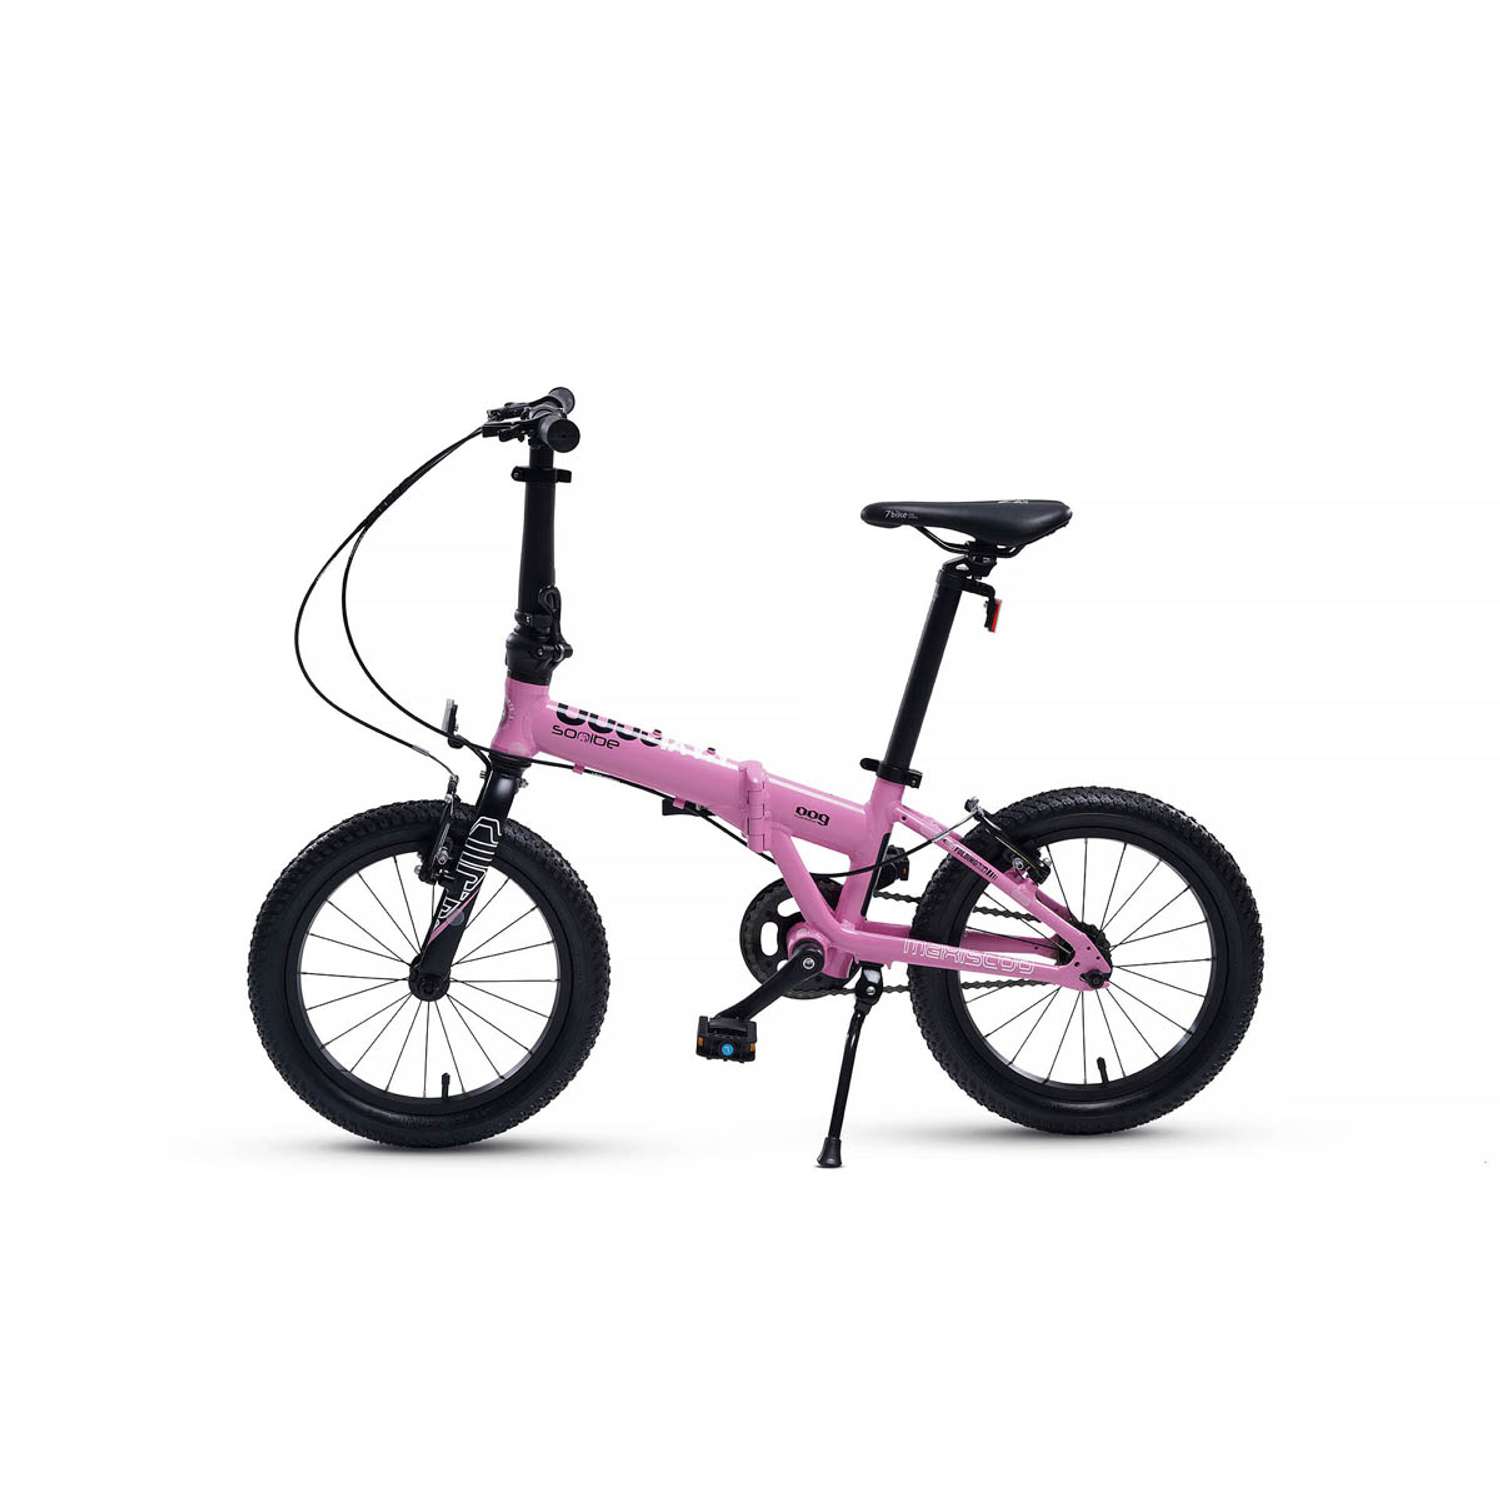 Велосипед Детский Складной Maxiscoo S009 16 розовый - фото 3